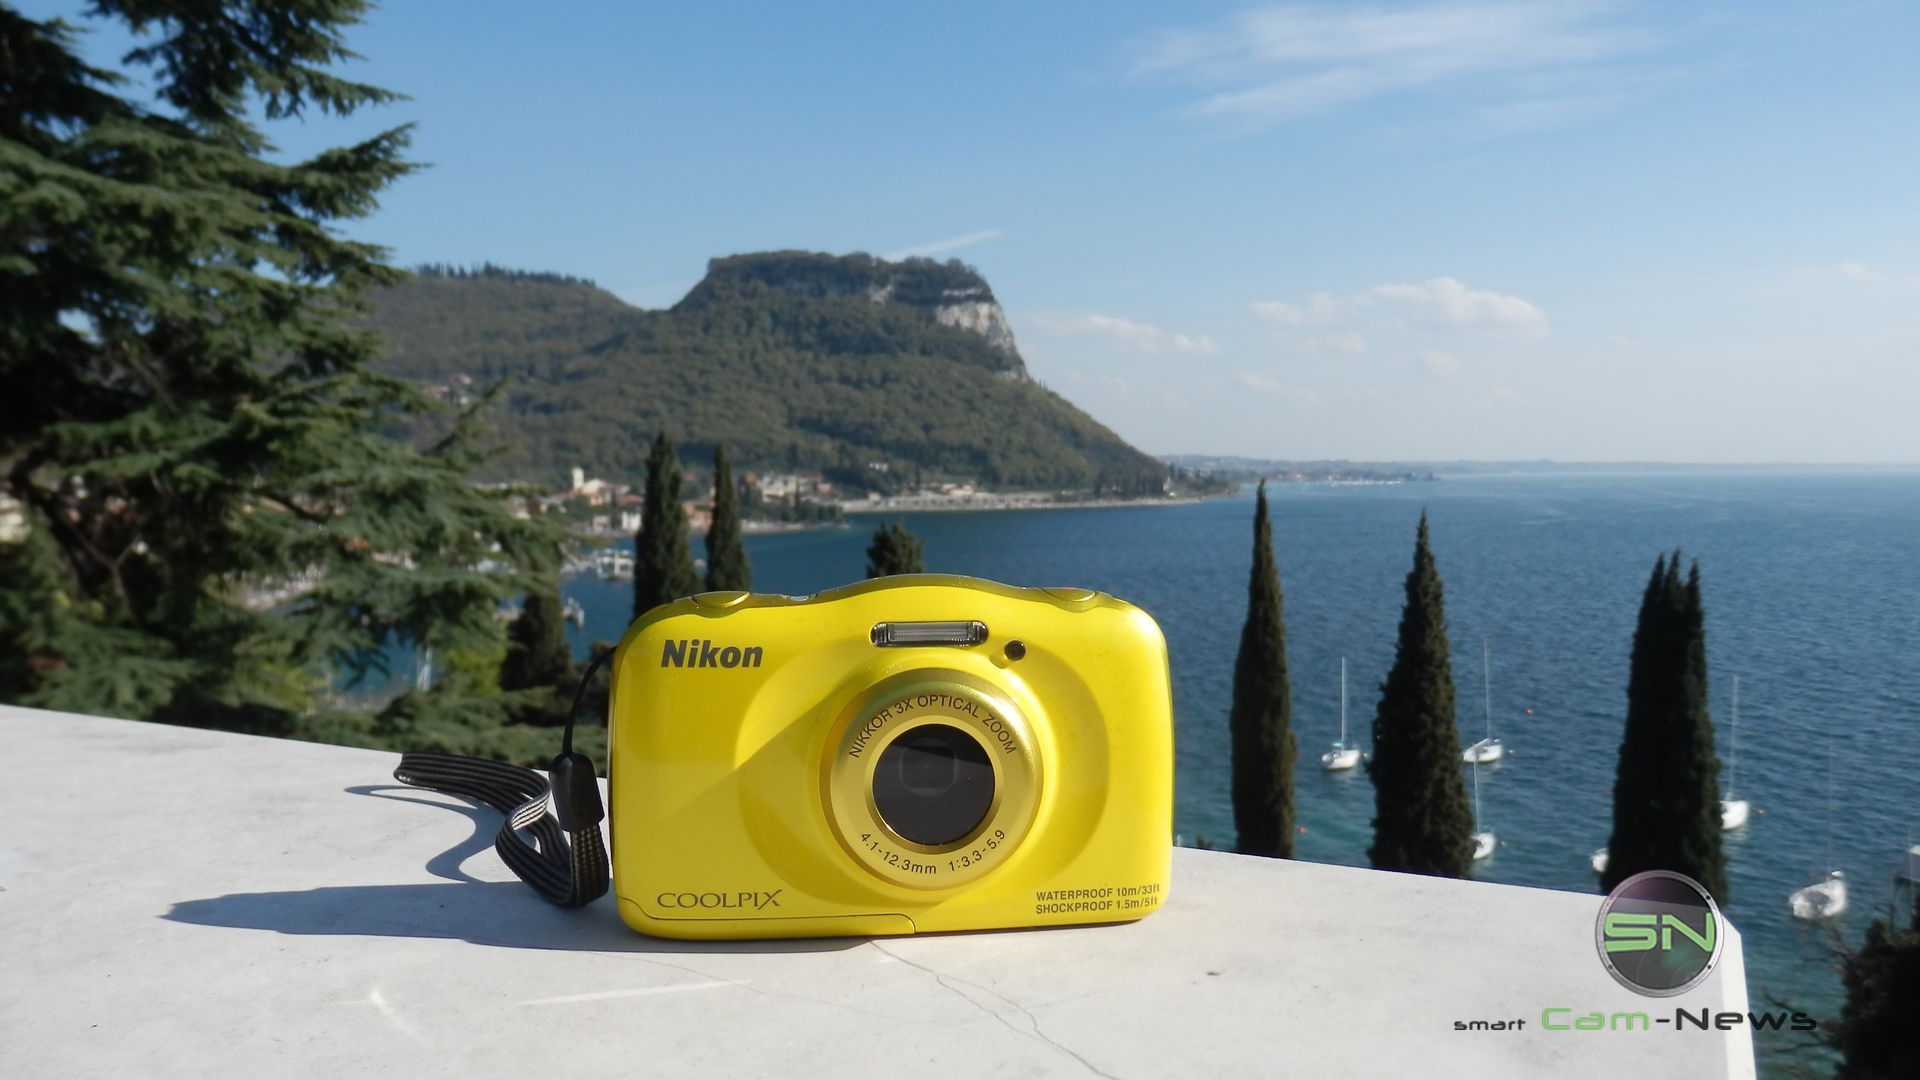 am Gardasee: Nikon Coolpix S33 / W100 Outdoor Kamera Schnäppchen